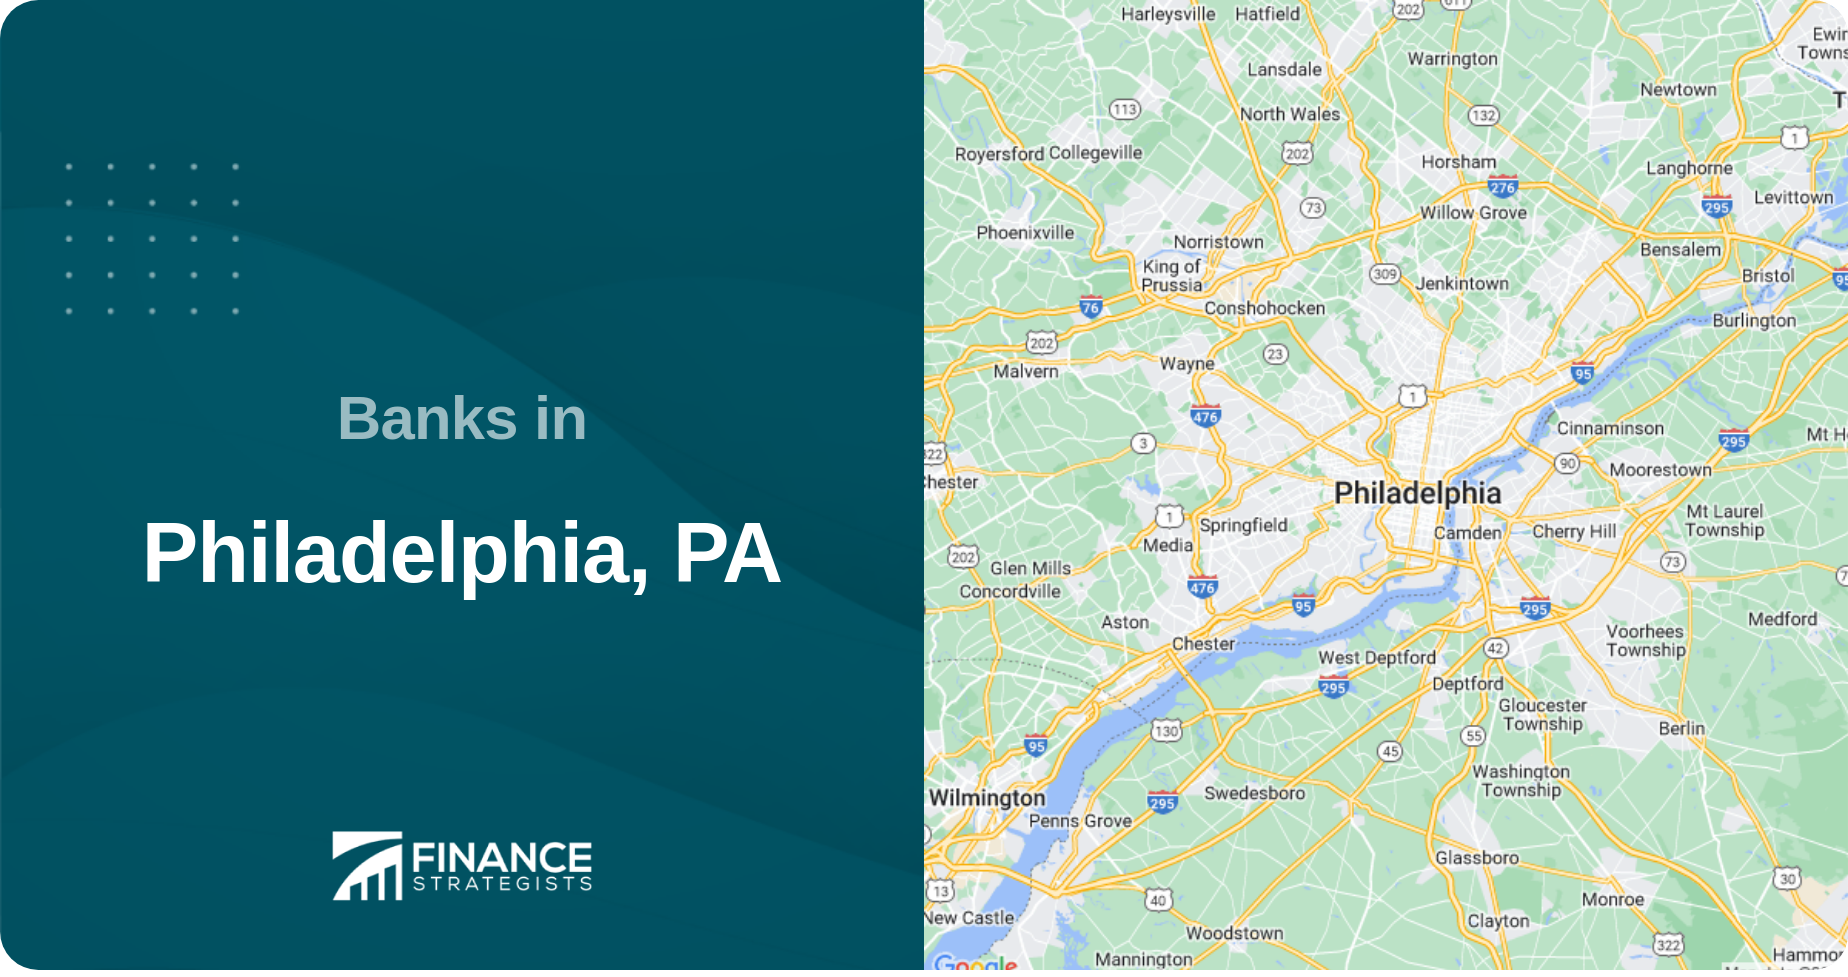 Banks in Philadelphia, PA